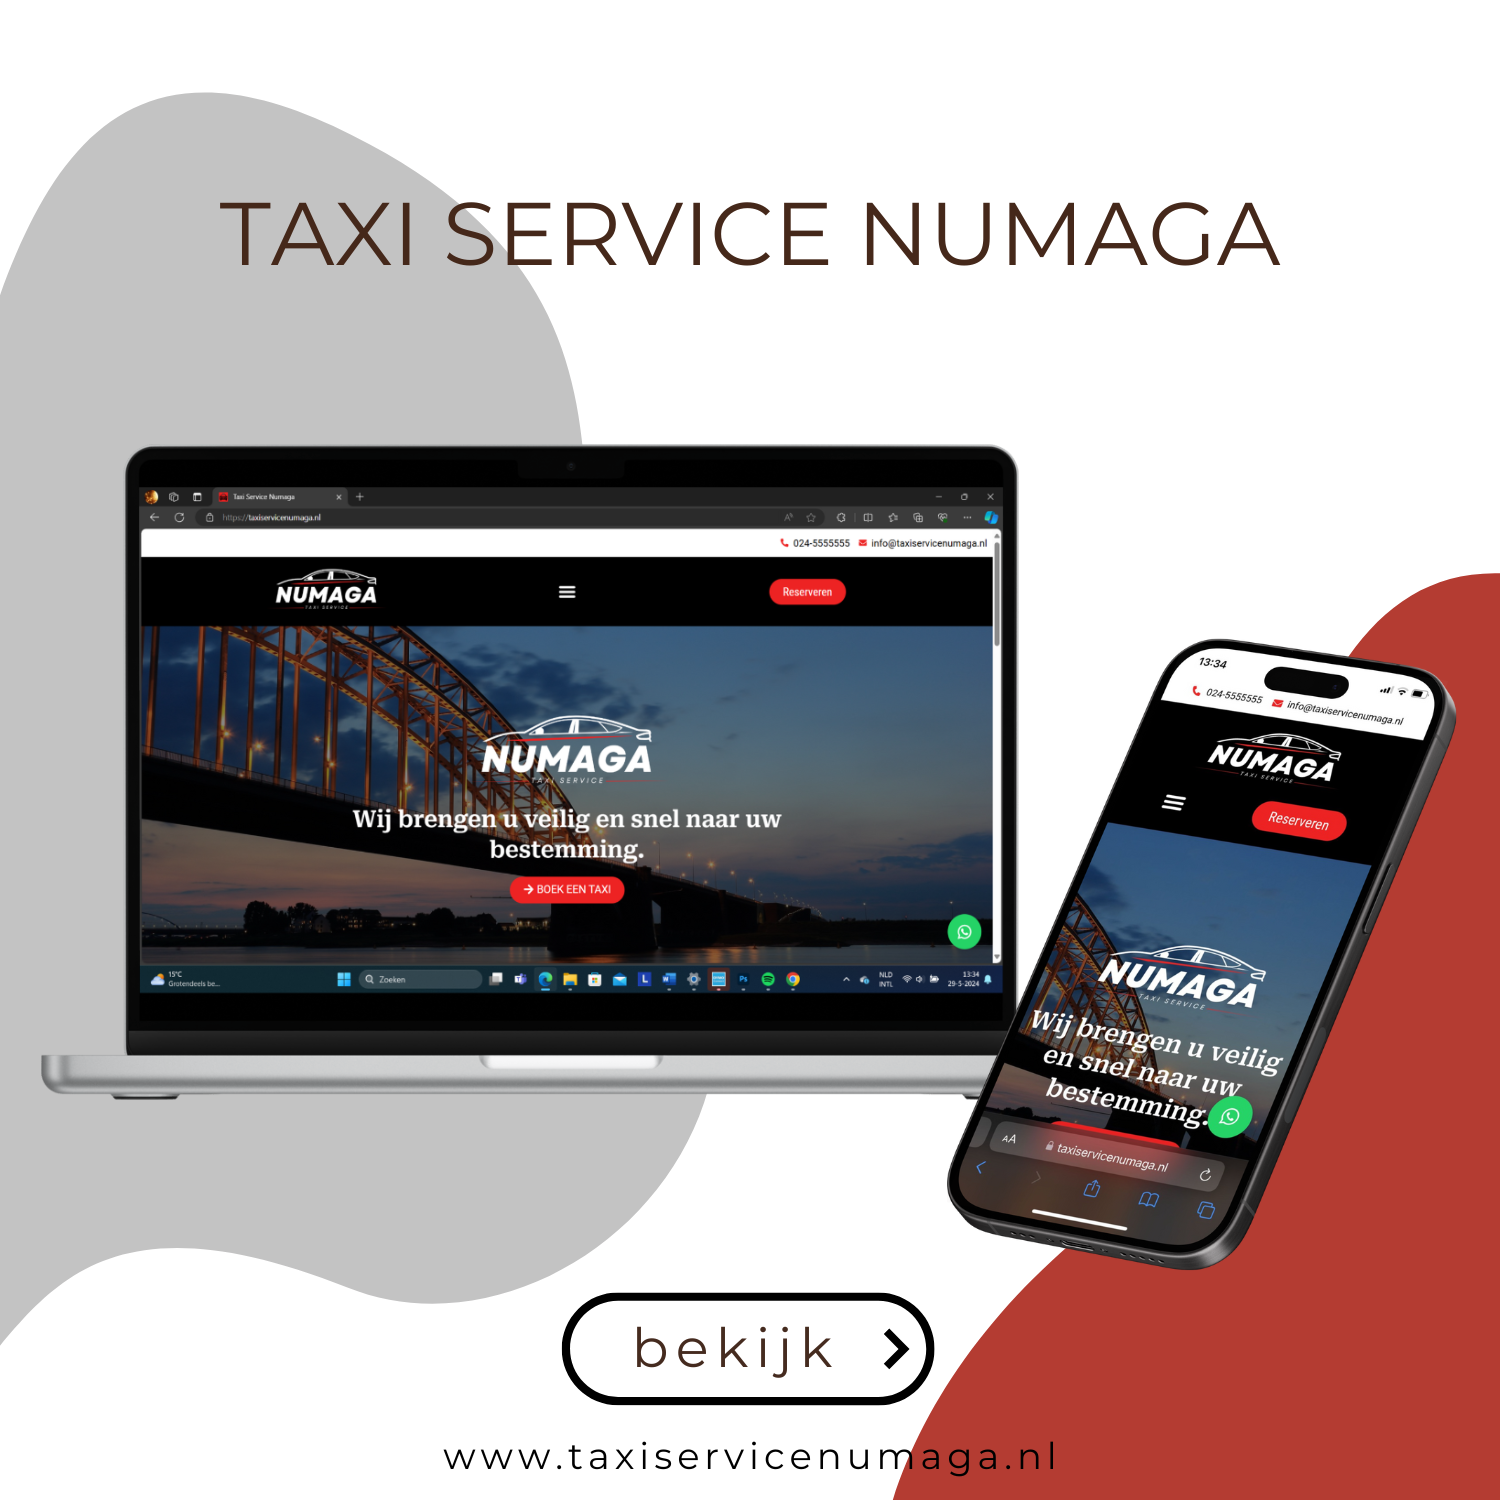 Website Taxi Service Numaga